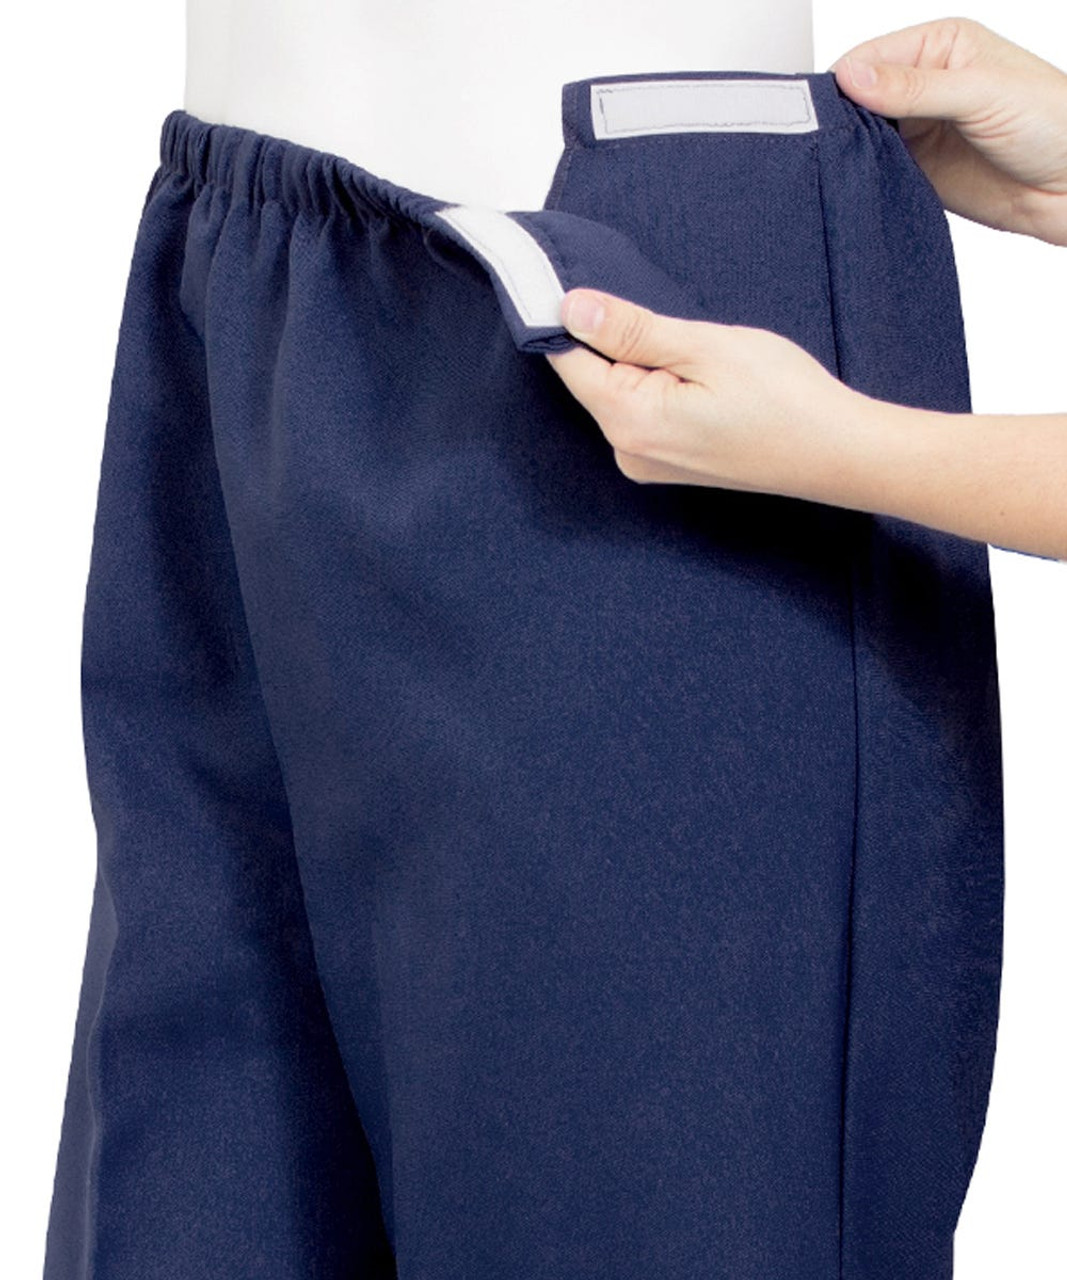 Silverts SV23120 Soft Knit Easy Access Pants for Women Navy, Size=3XL, SV23120-SV3-3XL